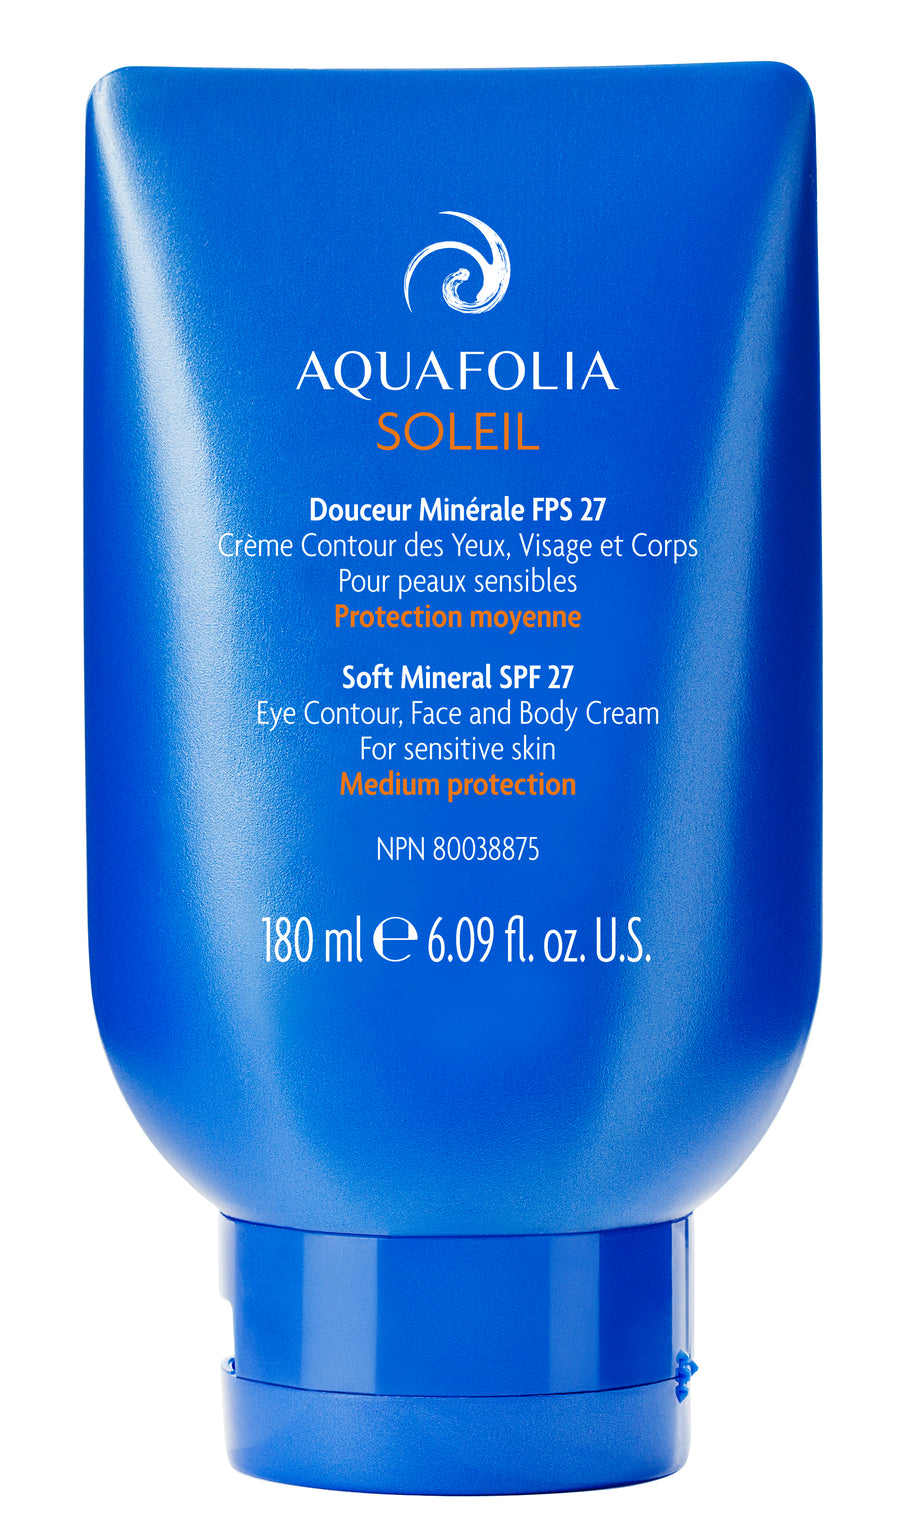 Aquafolia- Douceur Minérale FPS 27- Concept Aquafolia SOLEIL